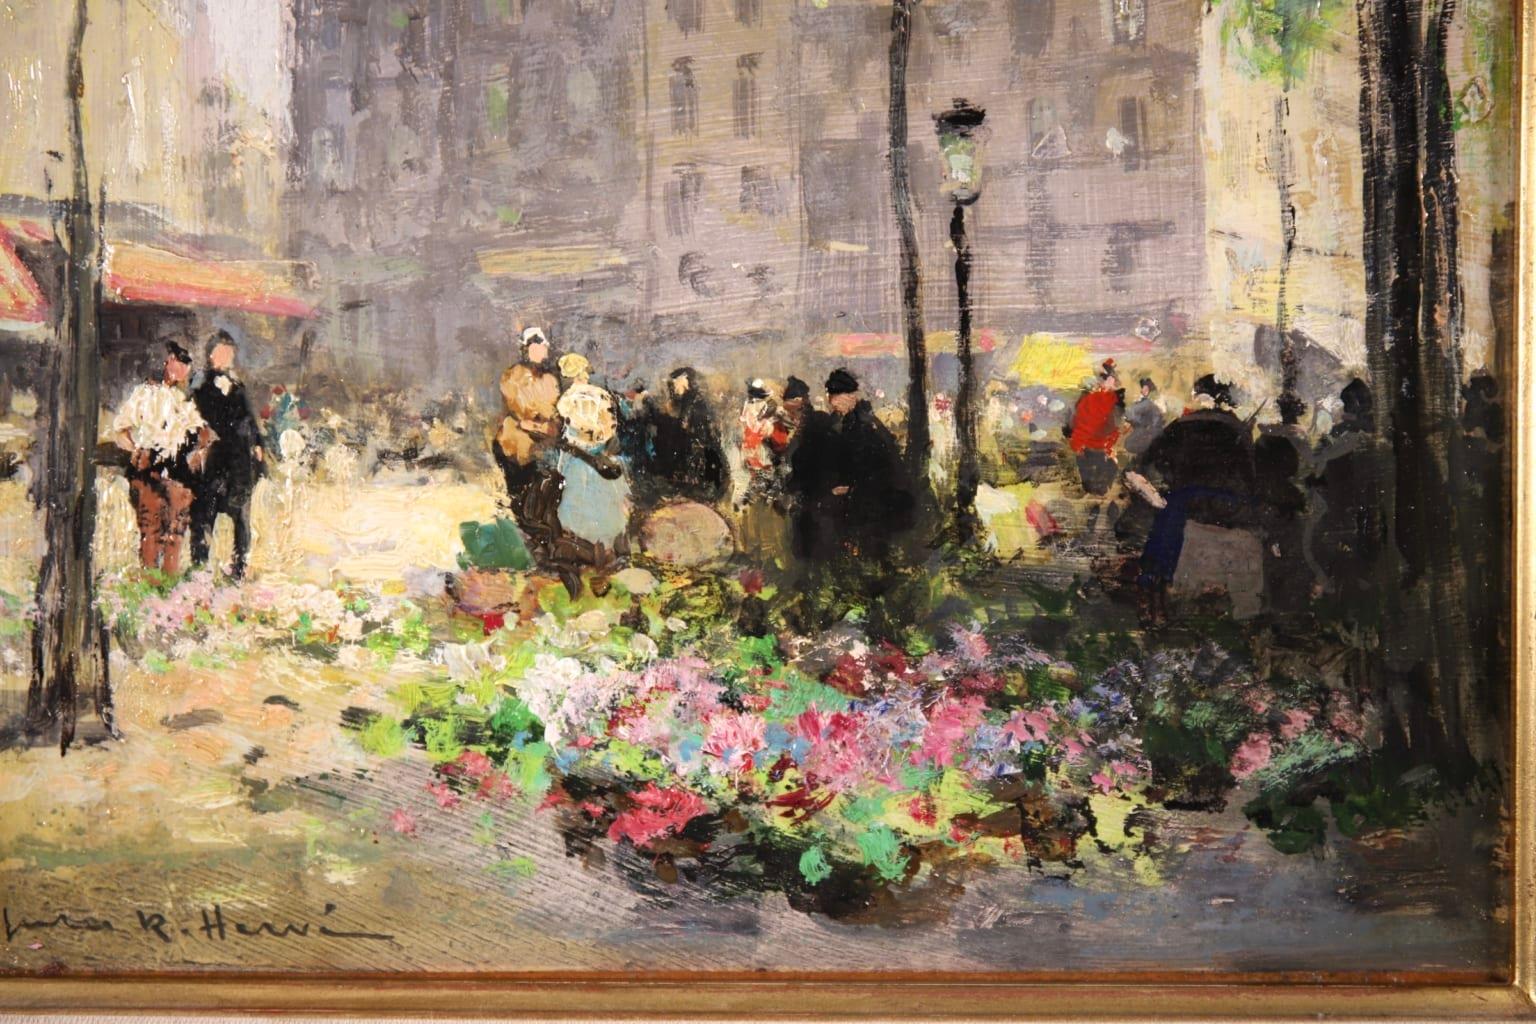 Flower Market - Impressionist Oil, Figures in City Landscape by Jules Rene Herve 1